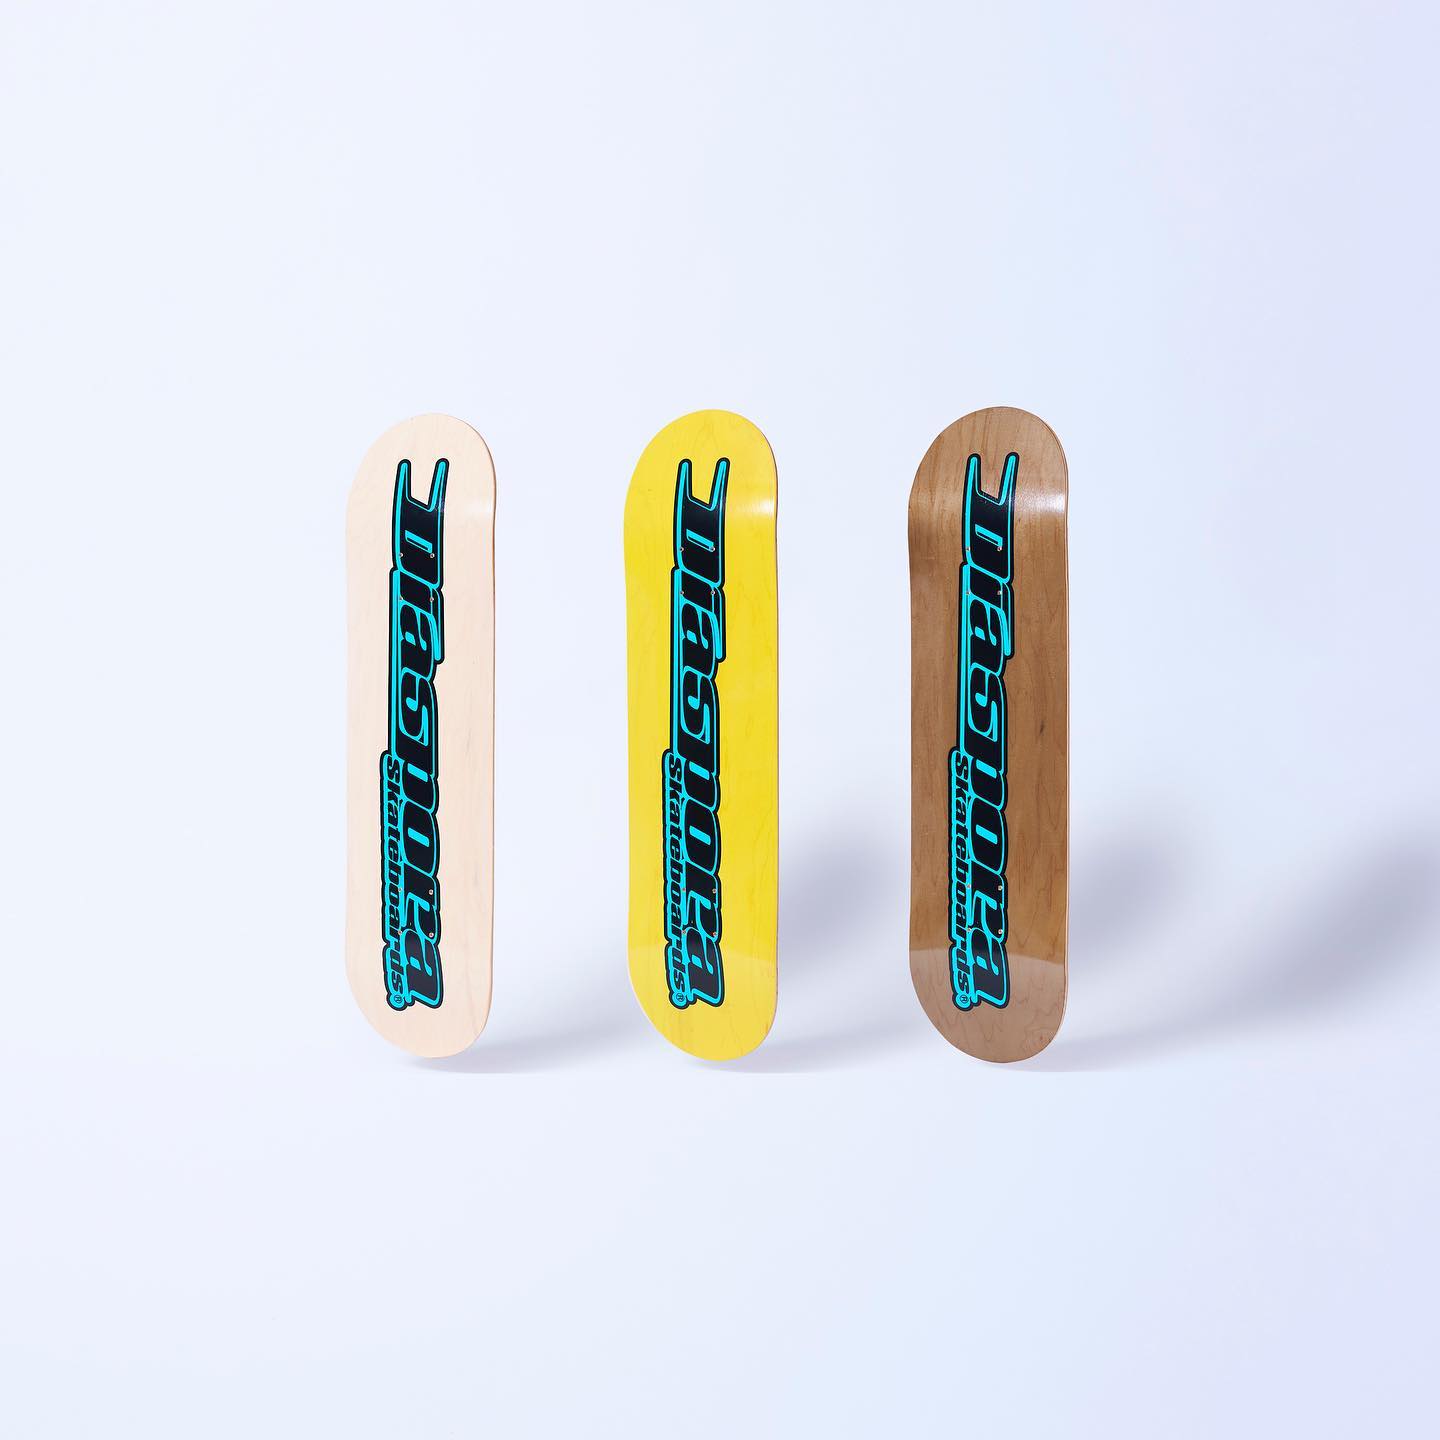 ・﻿【DIASPORA SKATEBOARDS】﻿Diaspora skateboards初となるスケートボードデッキ。フルレングスビデオSYMBIOSISの発表を記念し制作された、GUCCIMAZEによるロゴを全面にプリントしたデザインとなっています。北米産カナディアンメープルを使用し、プレスは木材の耐久性を持たせるためコールドプレスを採用。日本の湿気に対応した接着剤を使用し、強度と耐水性に優れています。yellow:8.0inchbrown:8.25inch※yellowとbrownのみの入荷となっております。